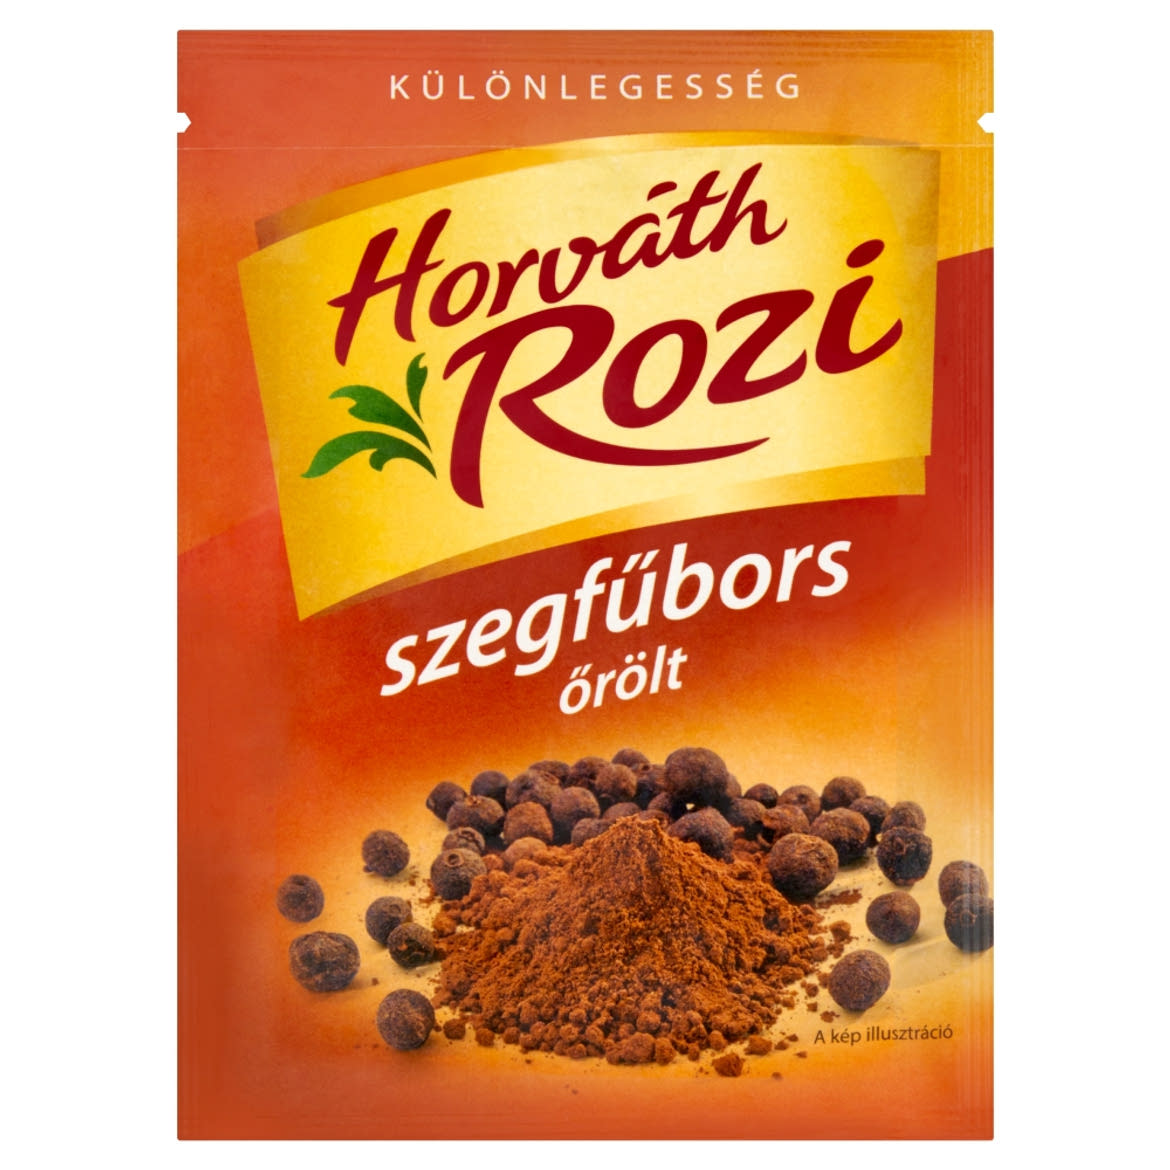 Horváth Rozi őrölt szegfűbors